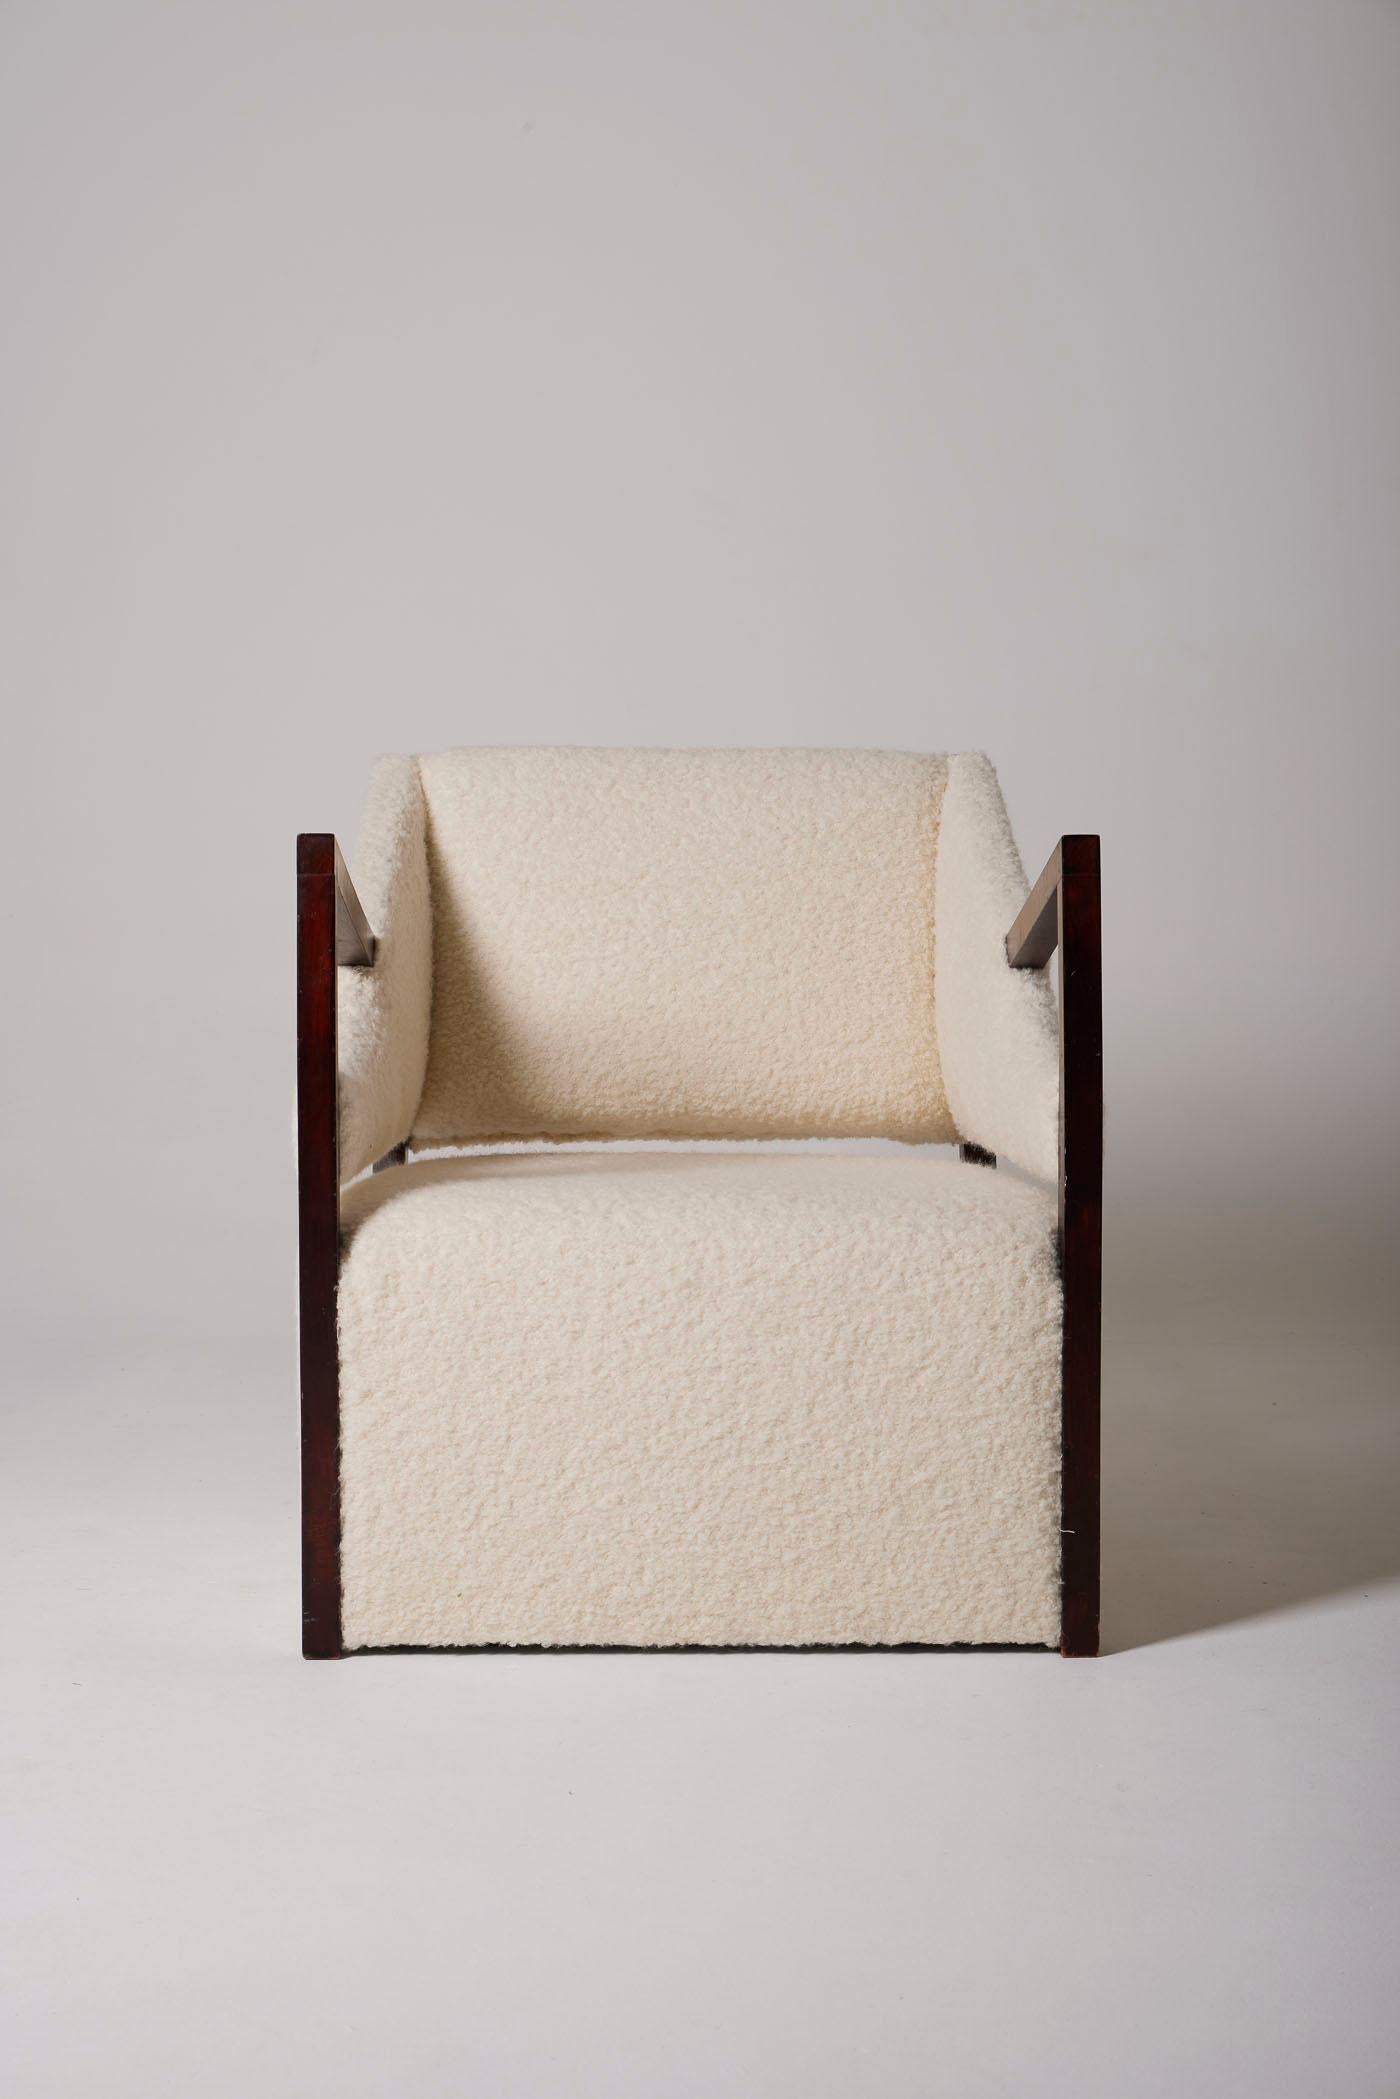 Un fauteuil retapissé en bouclé blanc avec des accoudoirs géométriques en bois, des années 1940. Deux fauteuils disponibles. En parfait état.
DV332